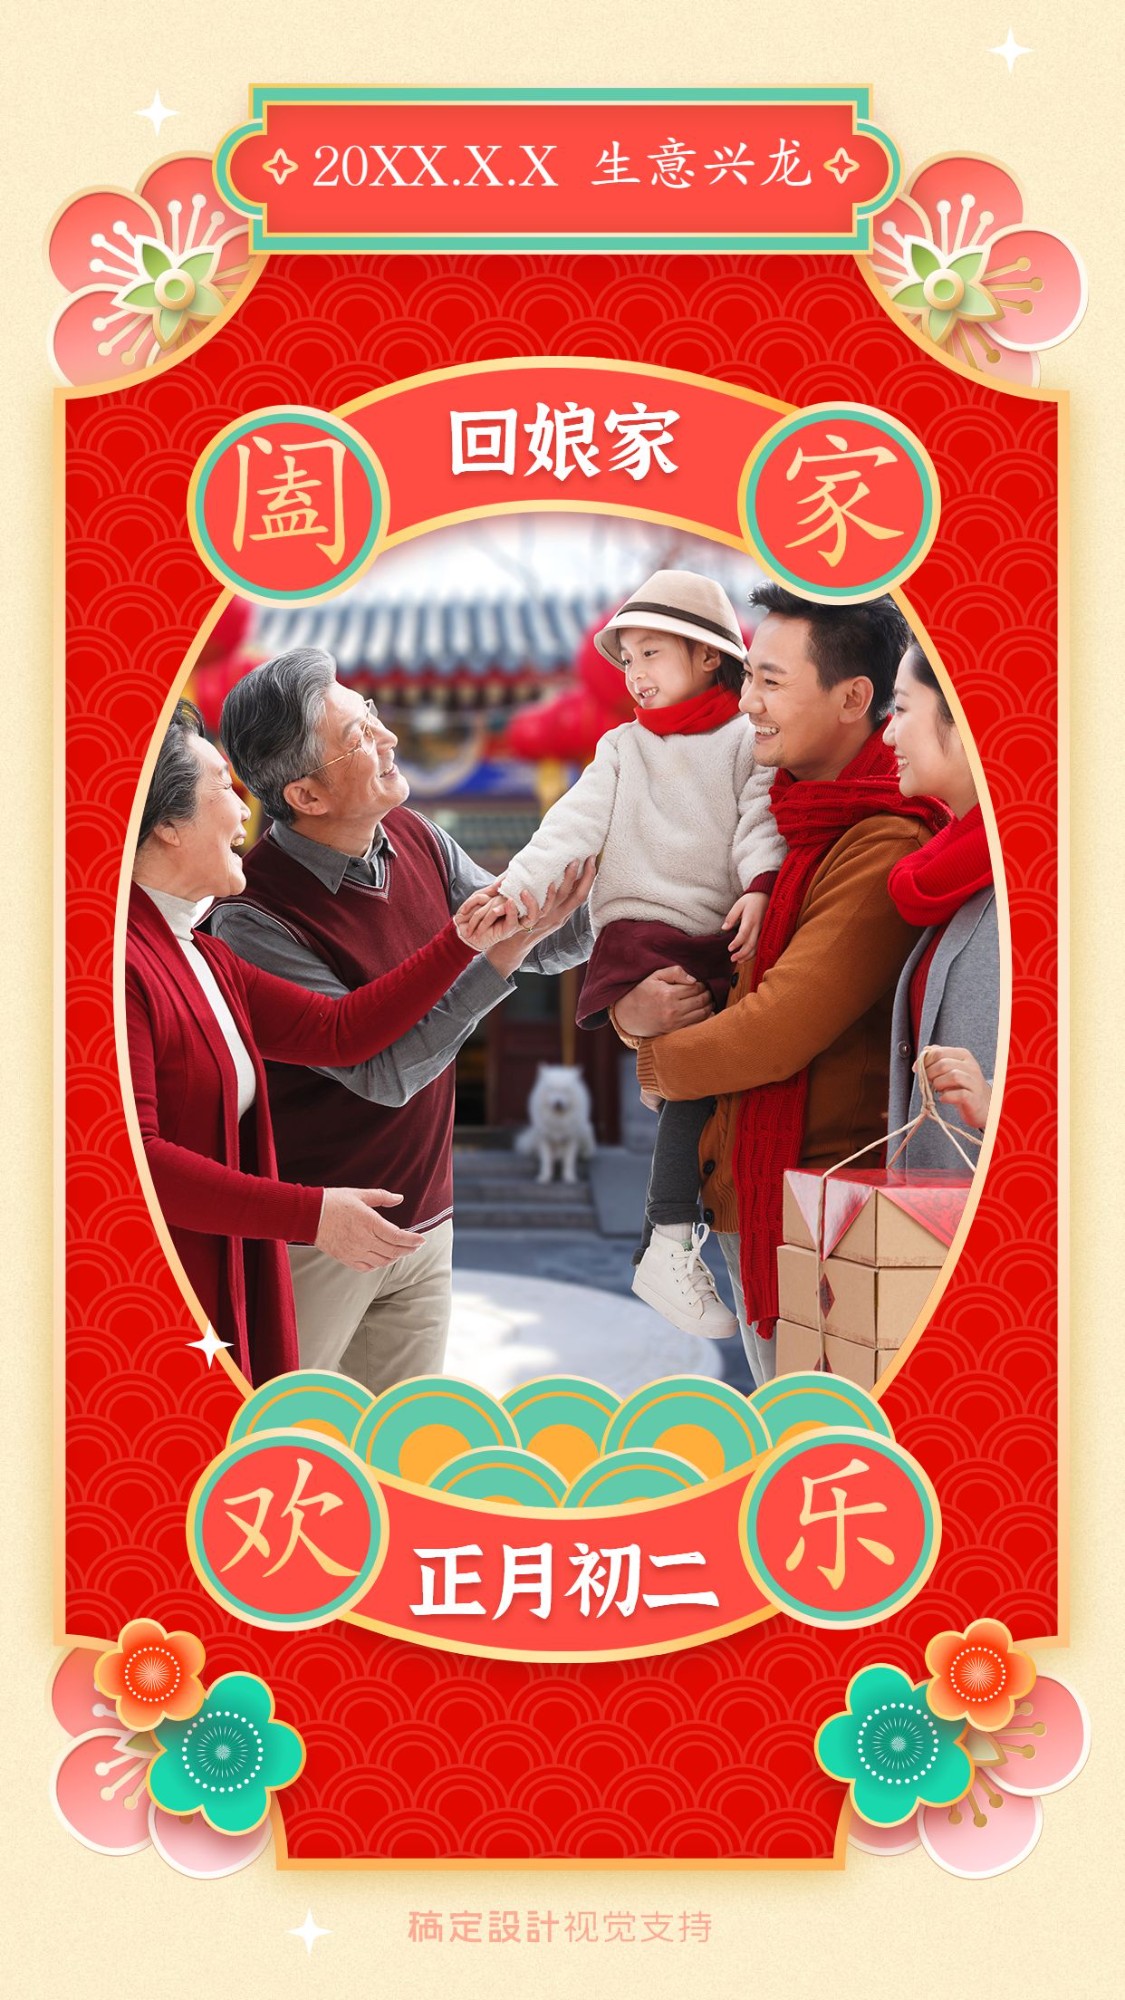 春节习俗正月初二回娘家拜年祝福